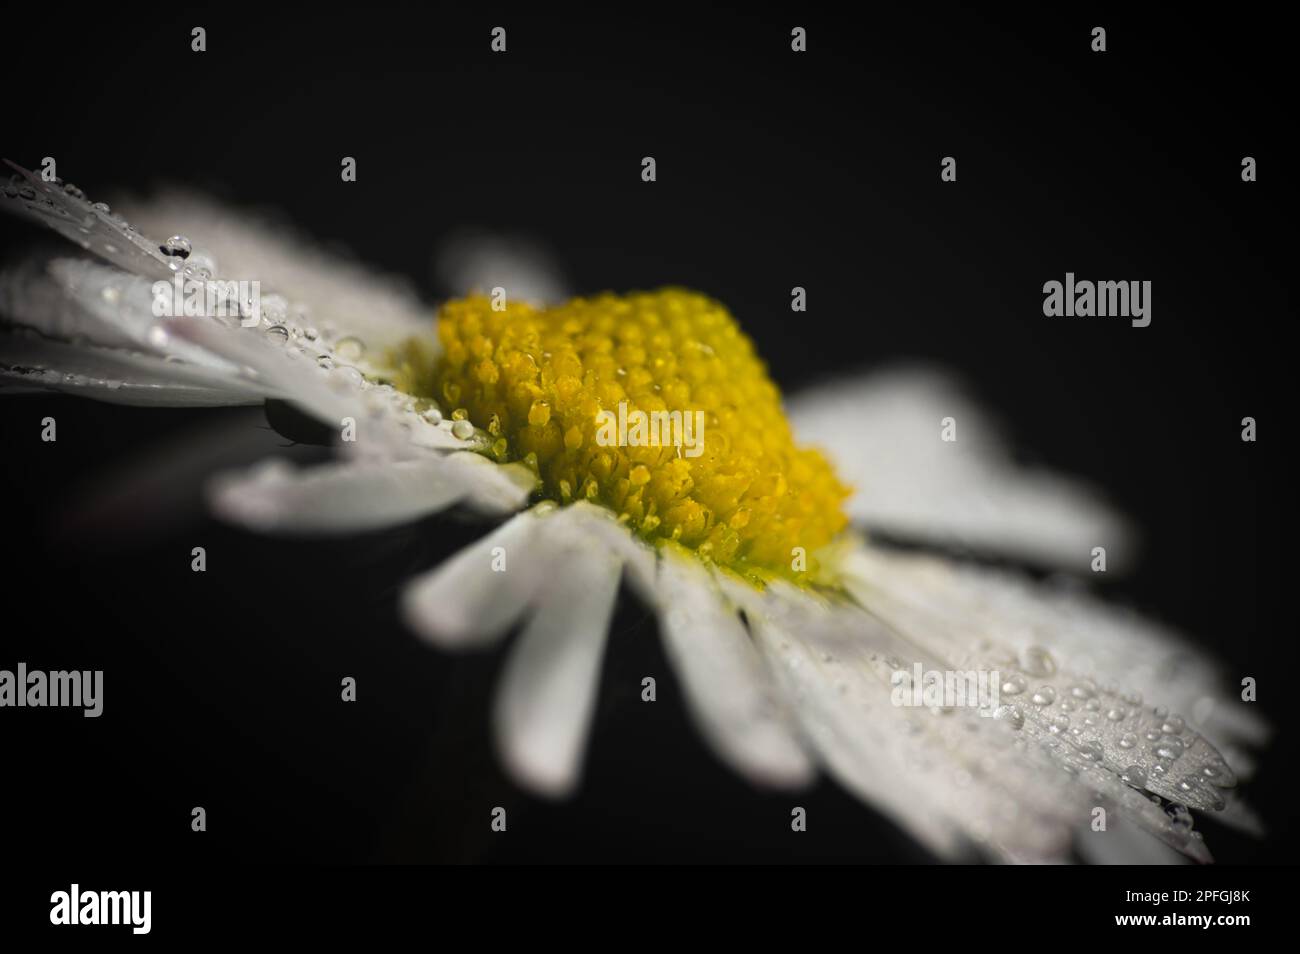 Gros plan de la fleur de Marguerite (Bellis perennis) photo. Macro extrême. Gouttes, gouttelettes sur les pétales blancs. Banque D'Images